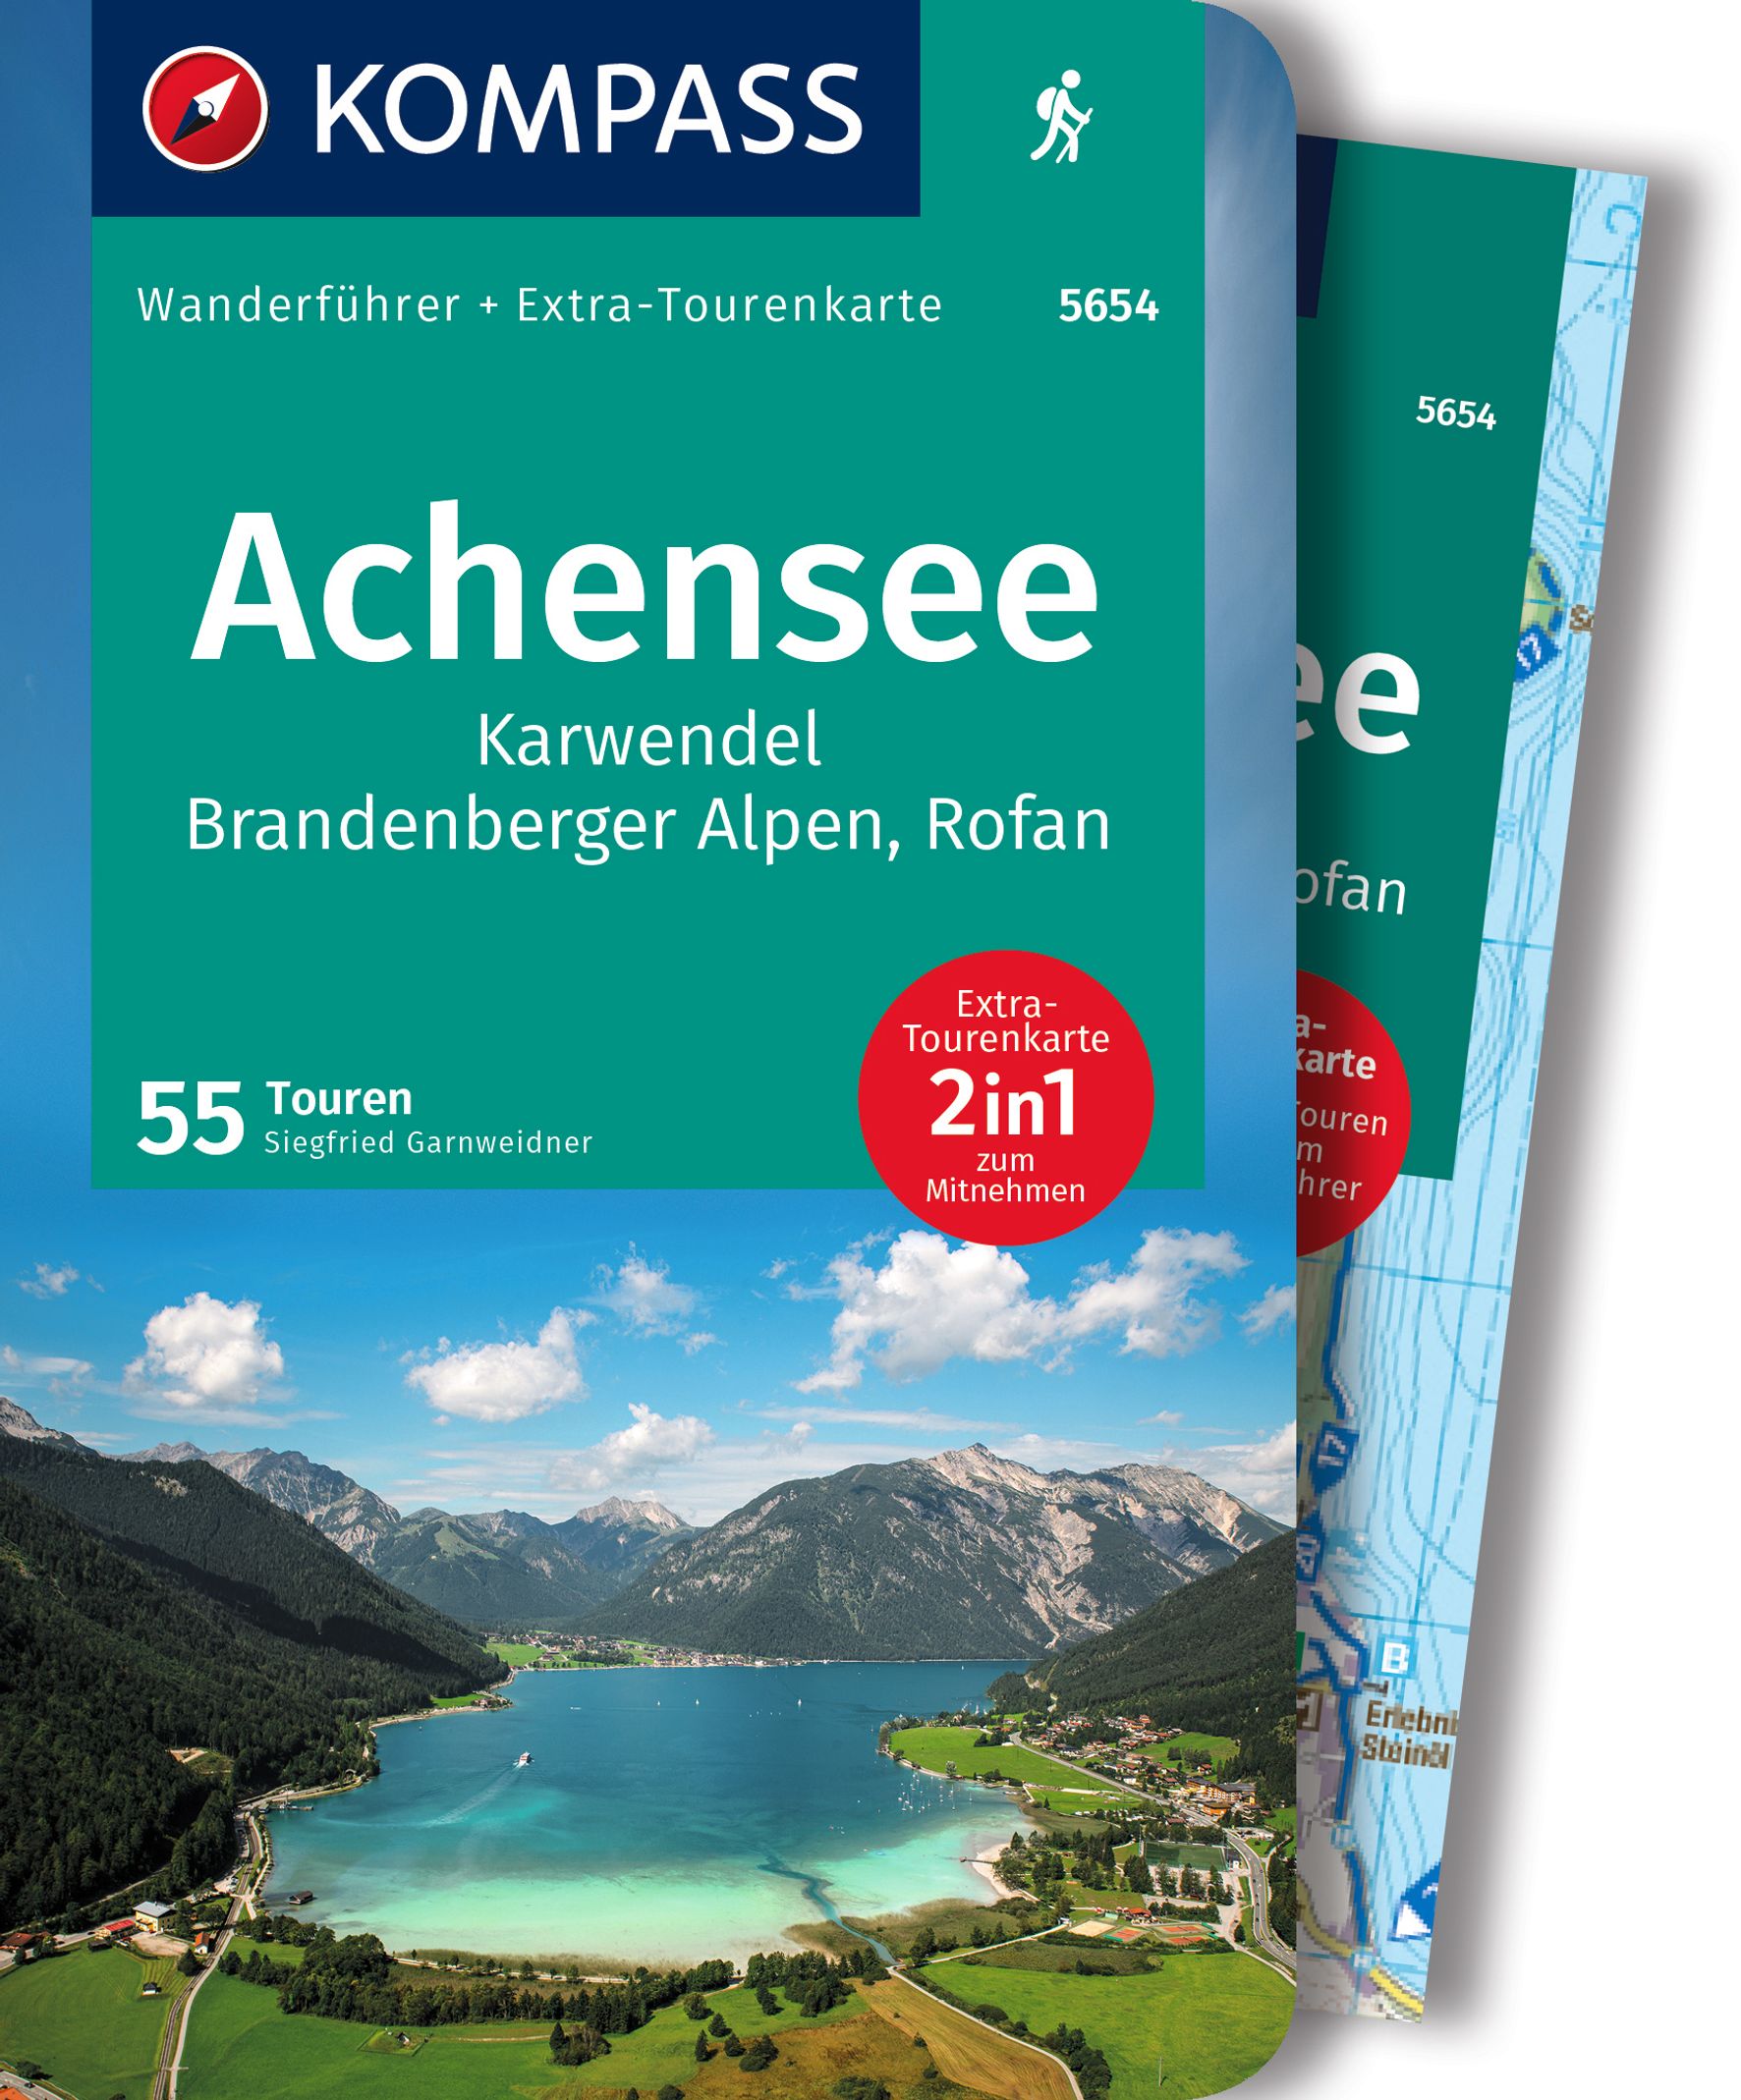 MAIRDUMONT Achensee, Karwendel, Brandenberger Alpen, Rofan, 50 Touren mit Extra-Tourenkarte